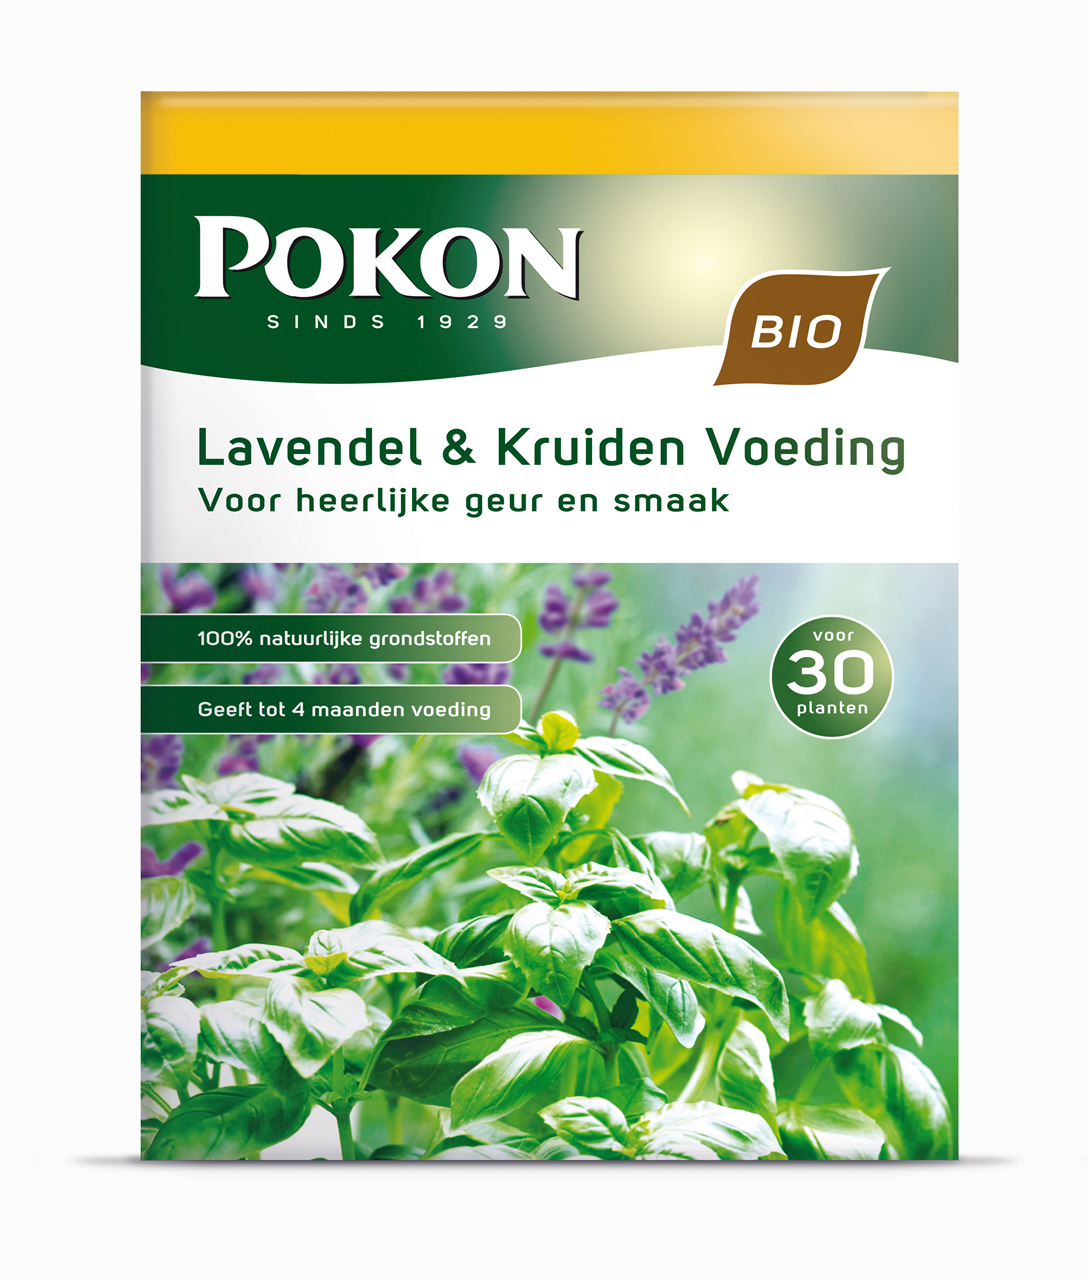 Pokon Bio Lavendel & Kruiden Voeding 1kg